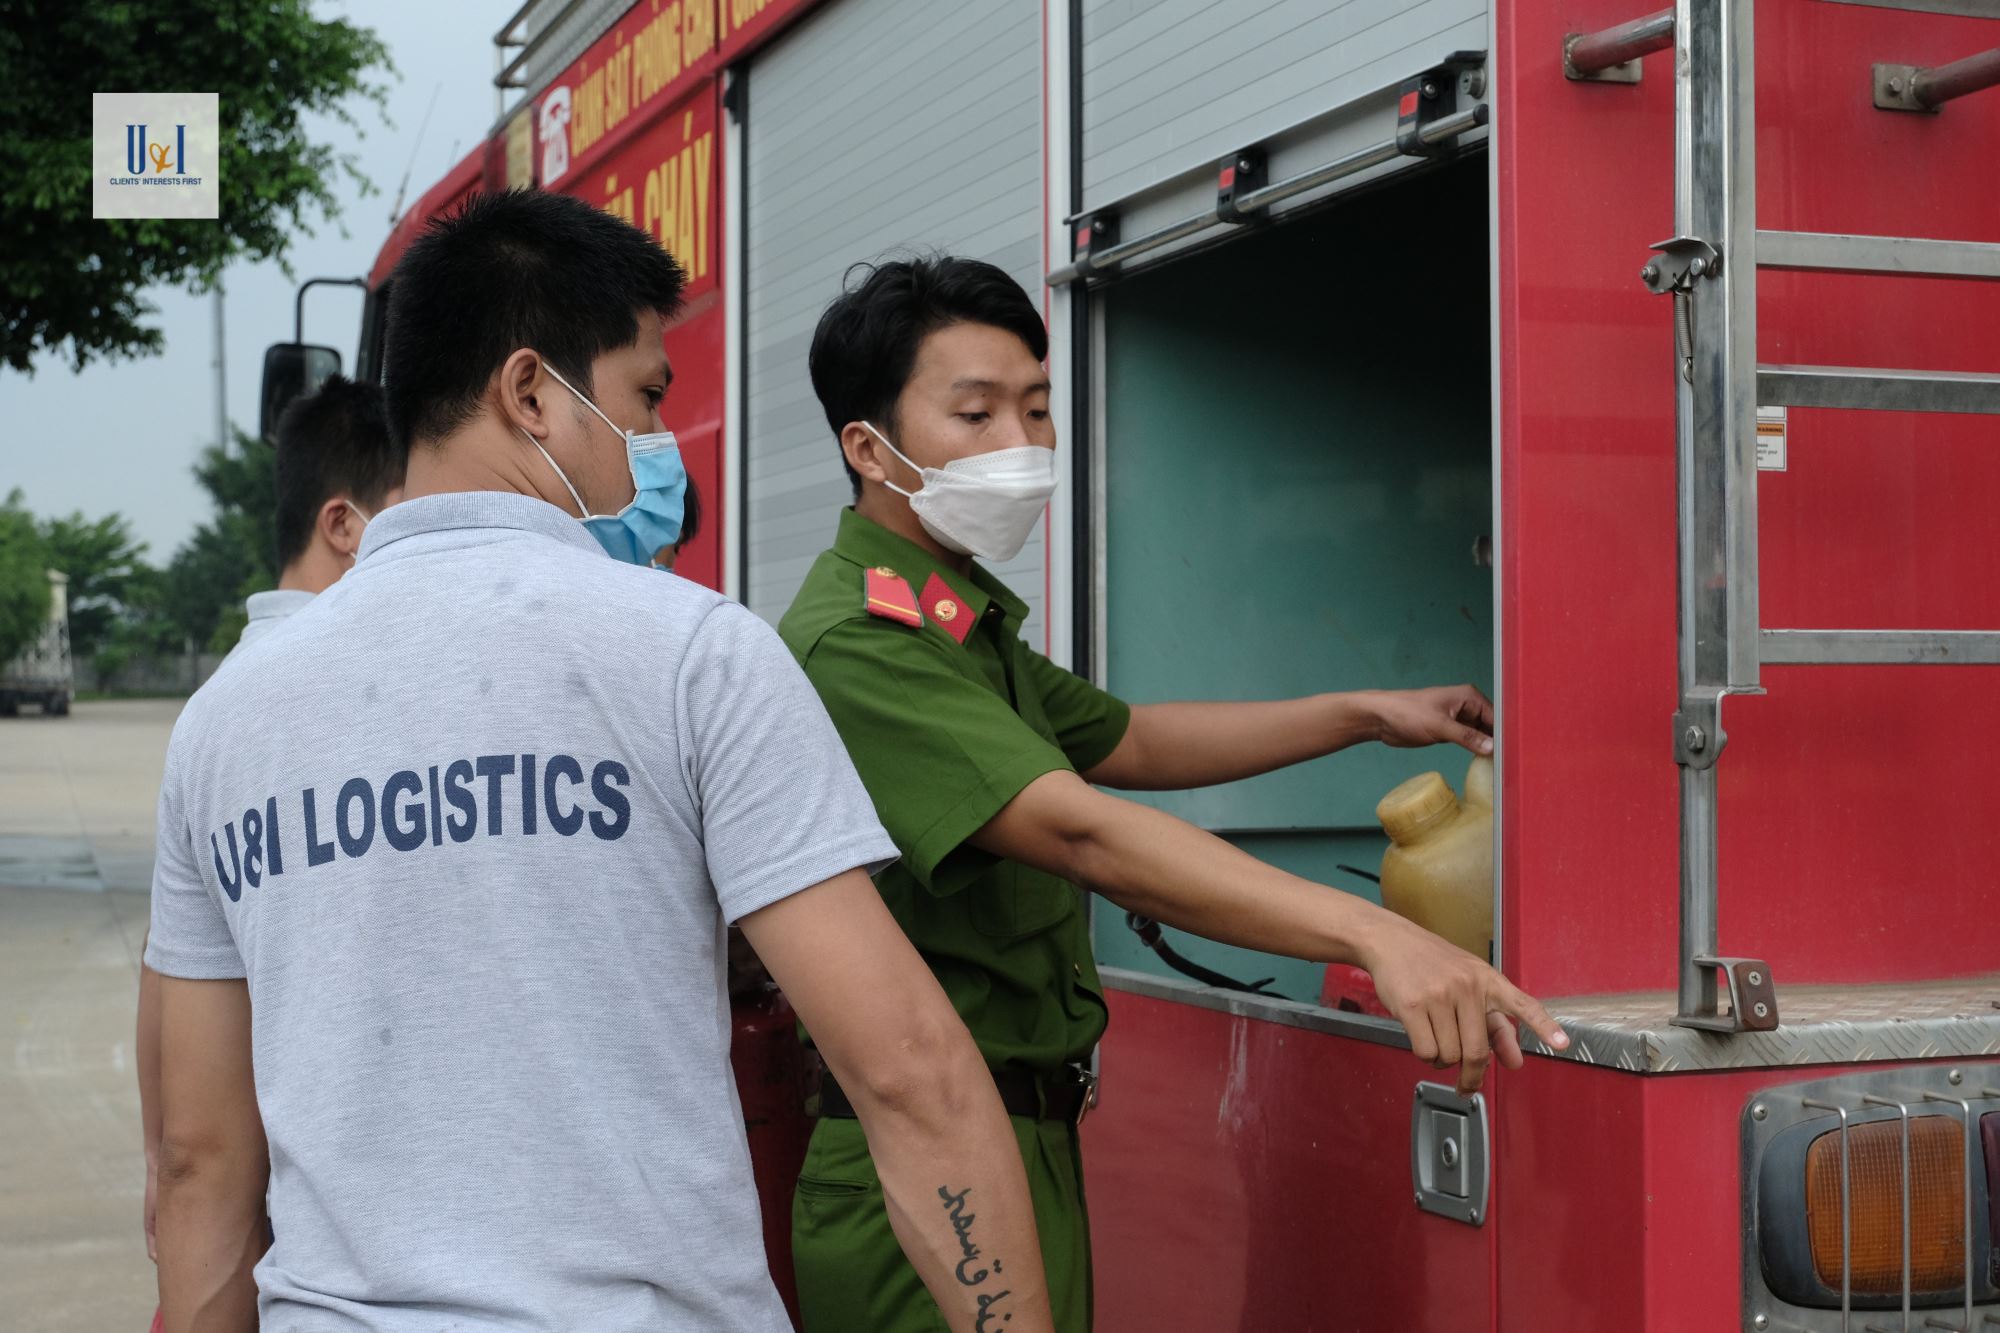 Cán bộ, công nhân viên công ty Logistics U&I được tập huấn, triển khai lăn vòi chữa cháy, tư thế cầm lăng chữa cháy